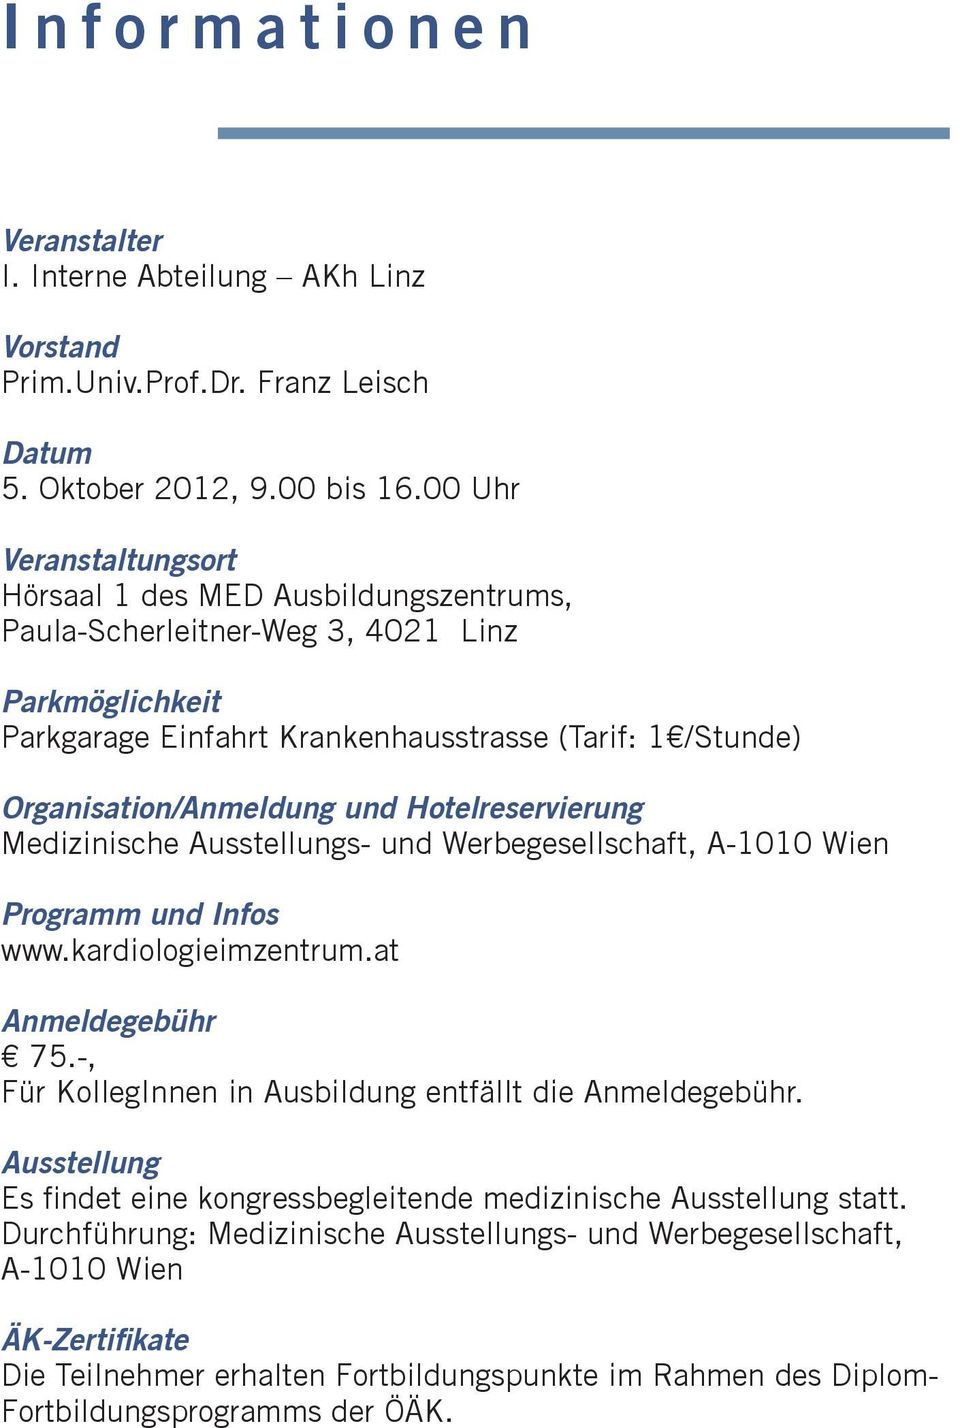 Organisation/Anmeldung und Hotelreservierung Medizinische Ausstellungs- und Werbegesellschaft, A-1010 Wien Programm und Infos www.kardiologieimzentrum.at Anmeldegebühr 75.